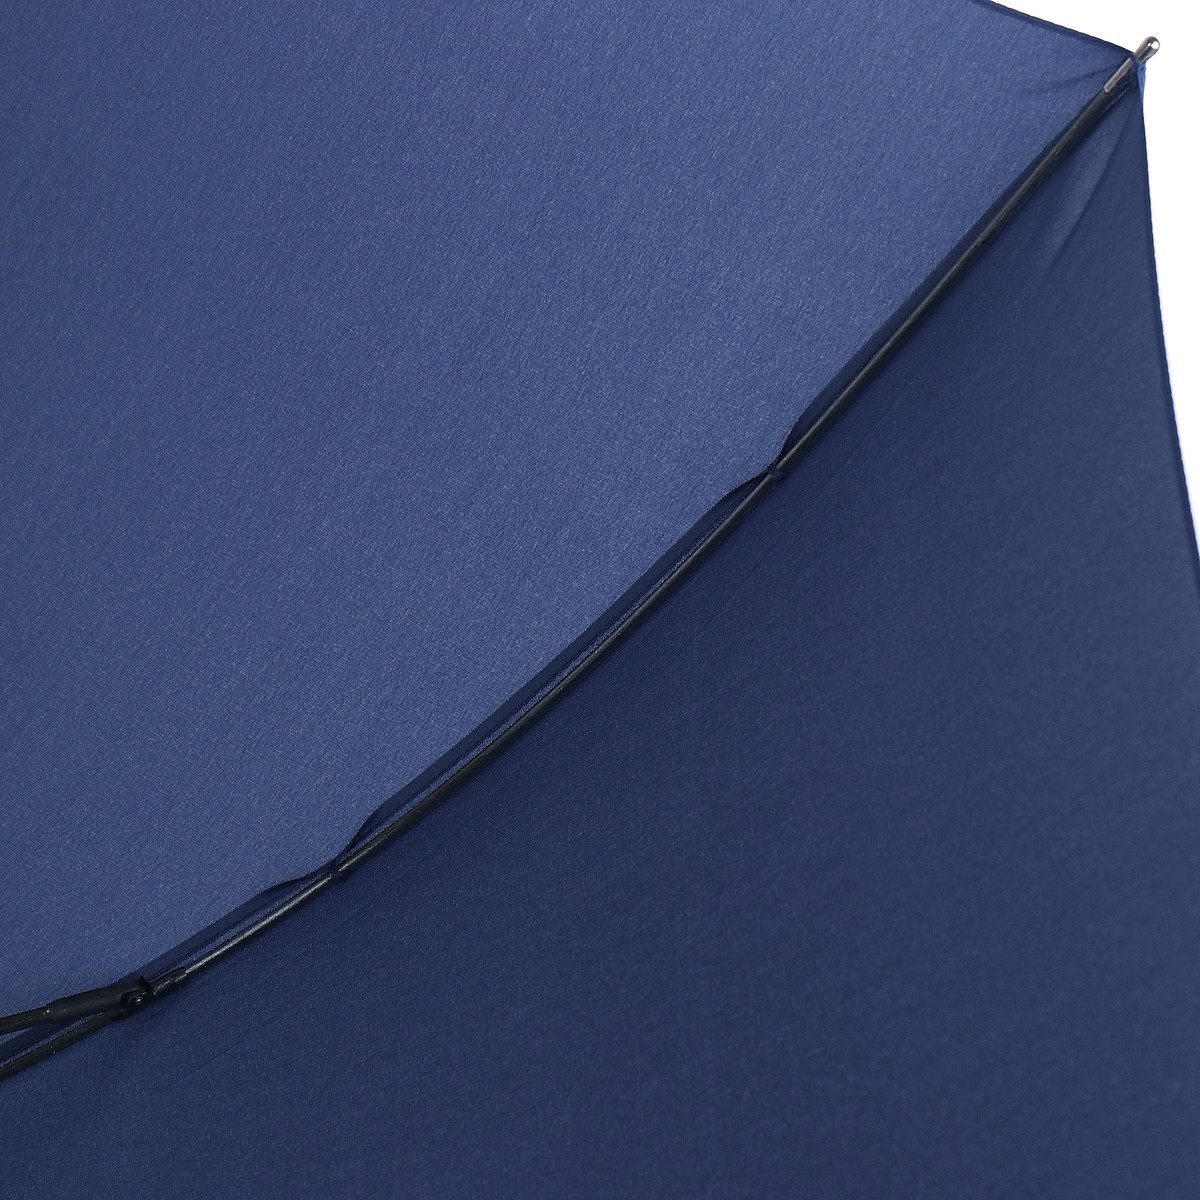 Мужской зонт-трость Art Rain 120 см синий - фото 5